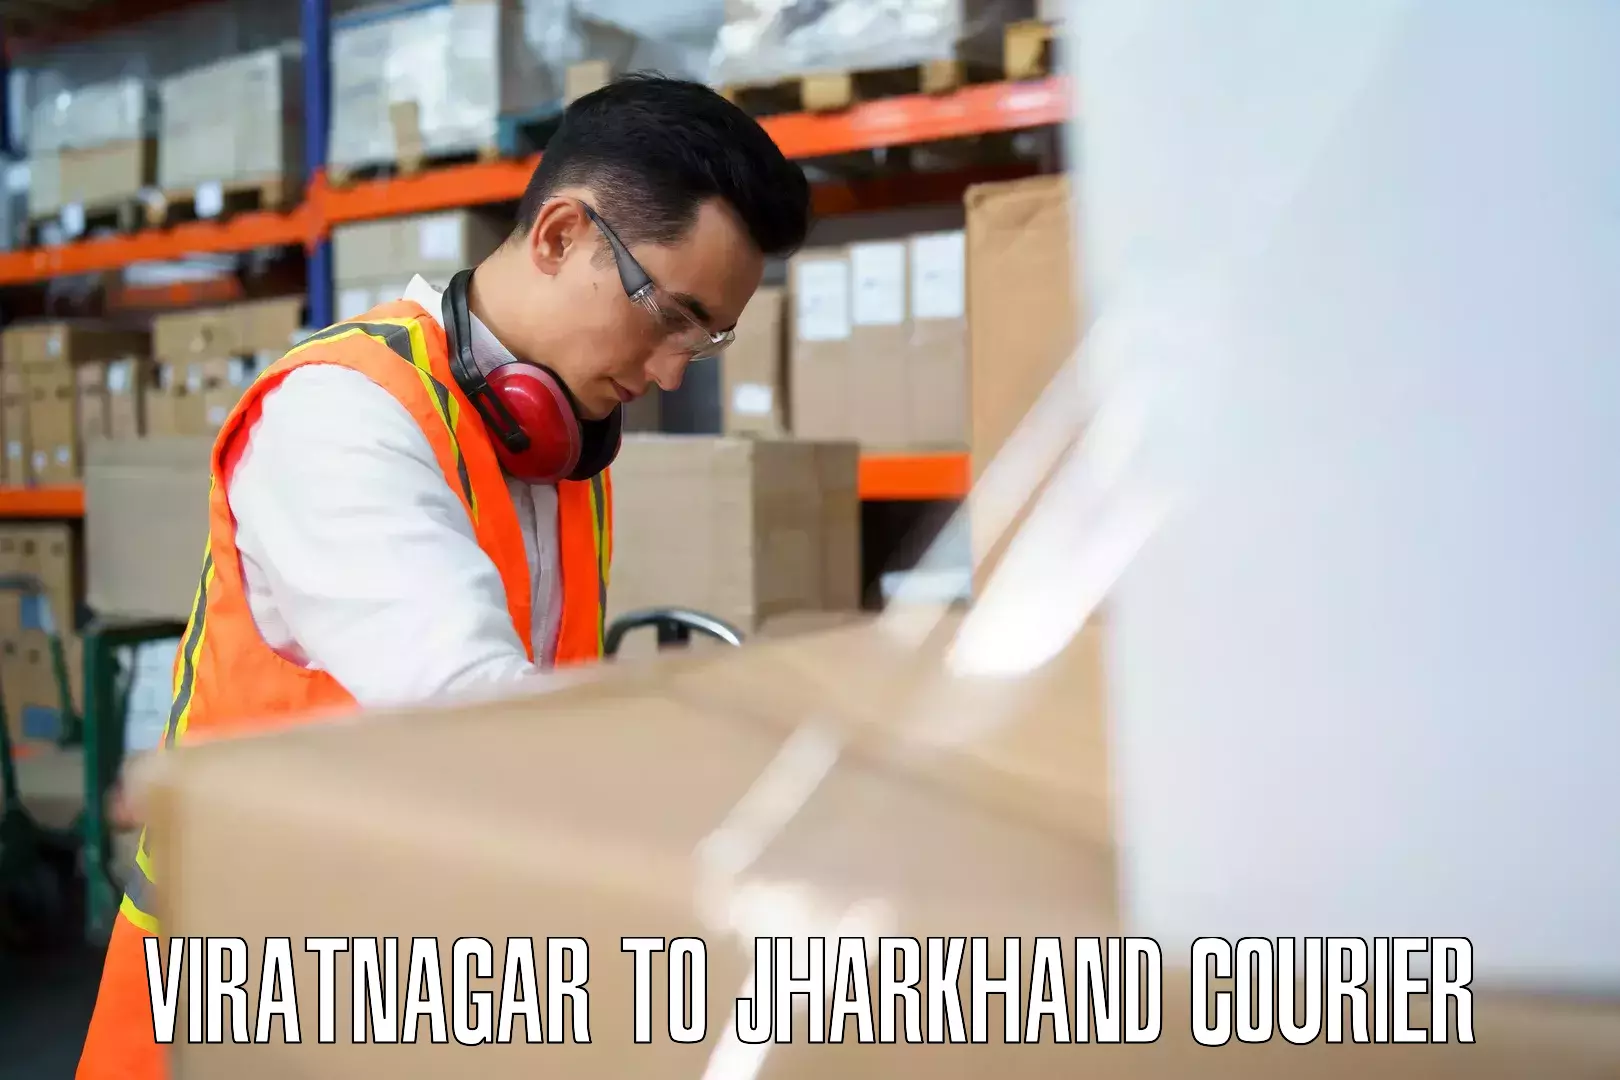 Luggage shipment processing Viratnagar to Chandankiyari